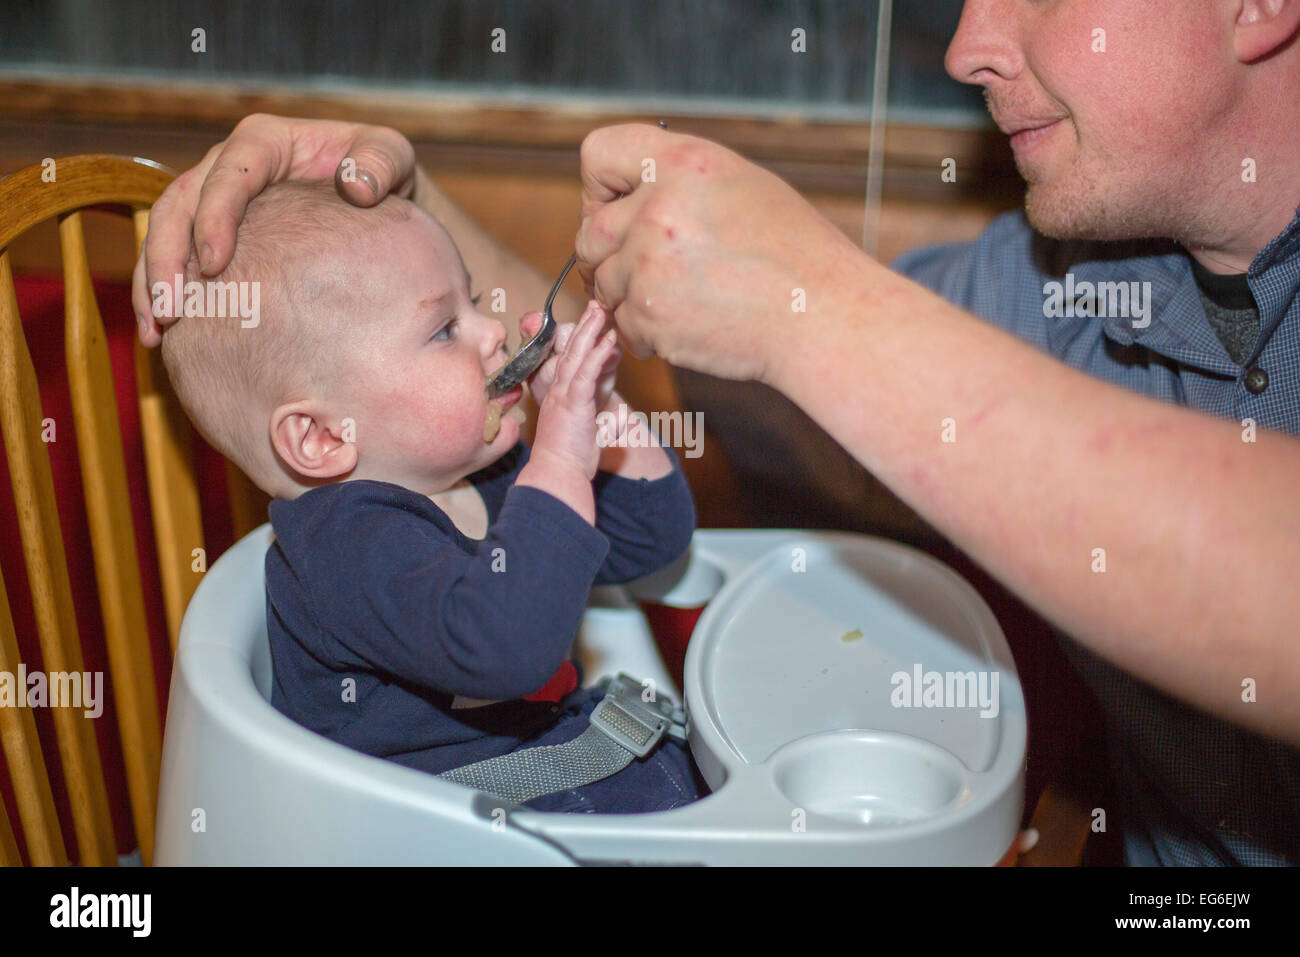 Denver, Colorado - Adam Hjermstad füttert seinen sieben Monate alten Sohn, Adam Hjermstad Jr Apfelmus. Stockfoto